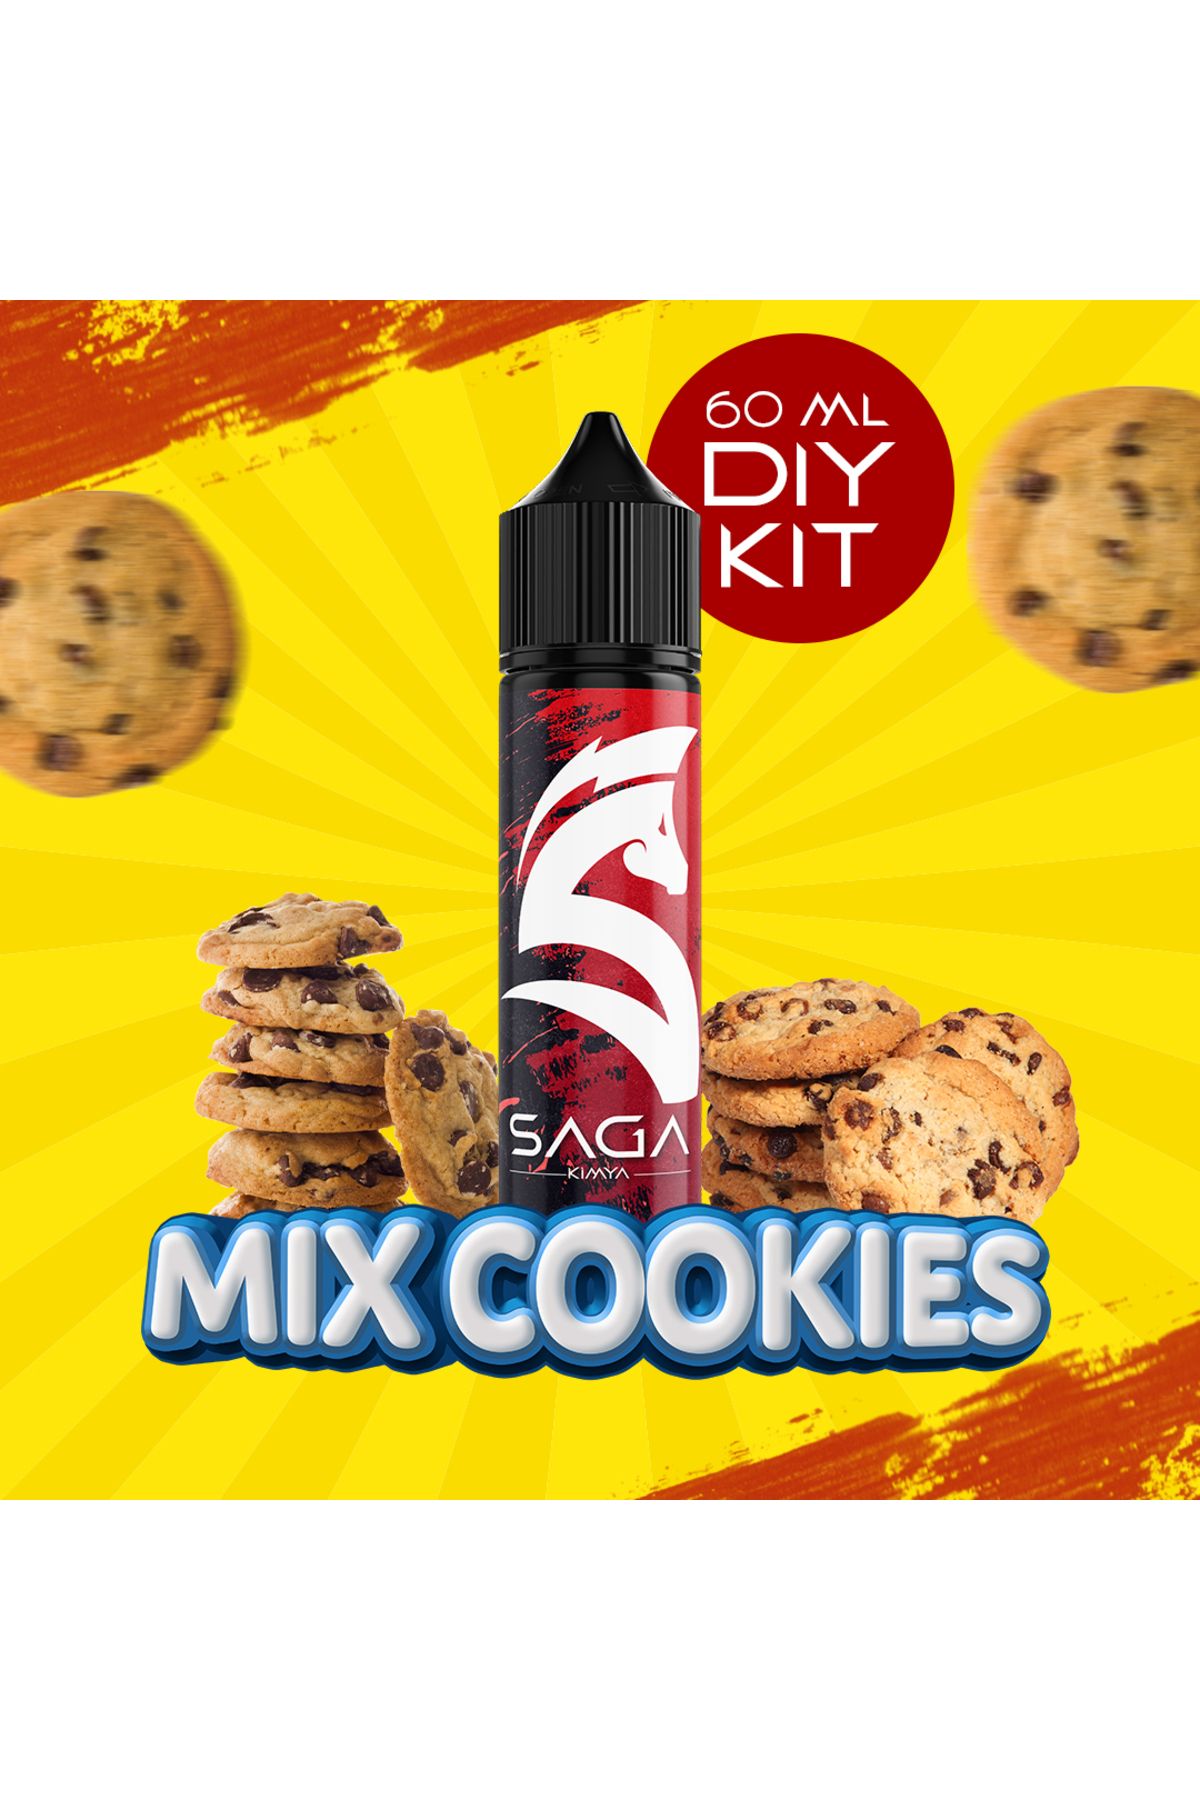 Saga Kimya Mix Cookies - 60 ml DIY Kit (ŞİŞEDE SADECE 12 ML AROMA VARDIR)